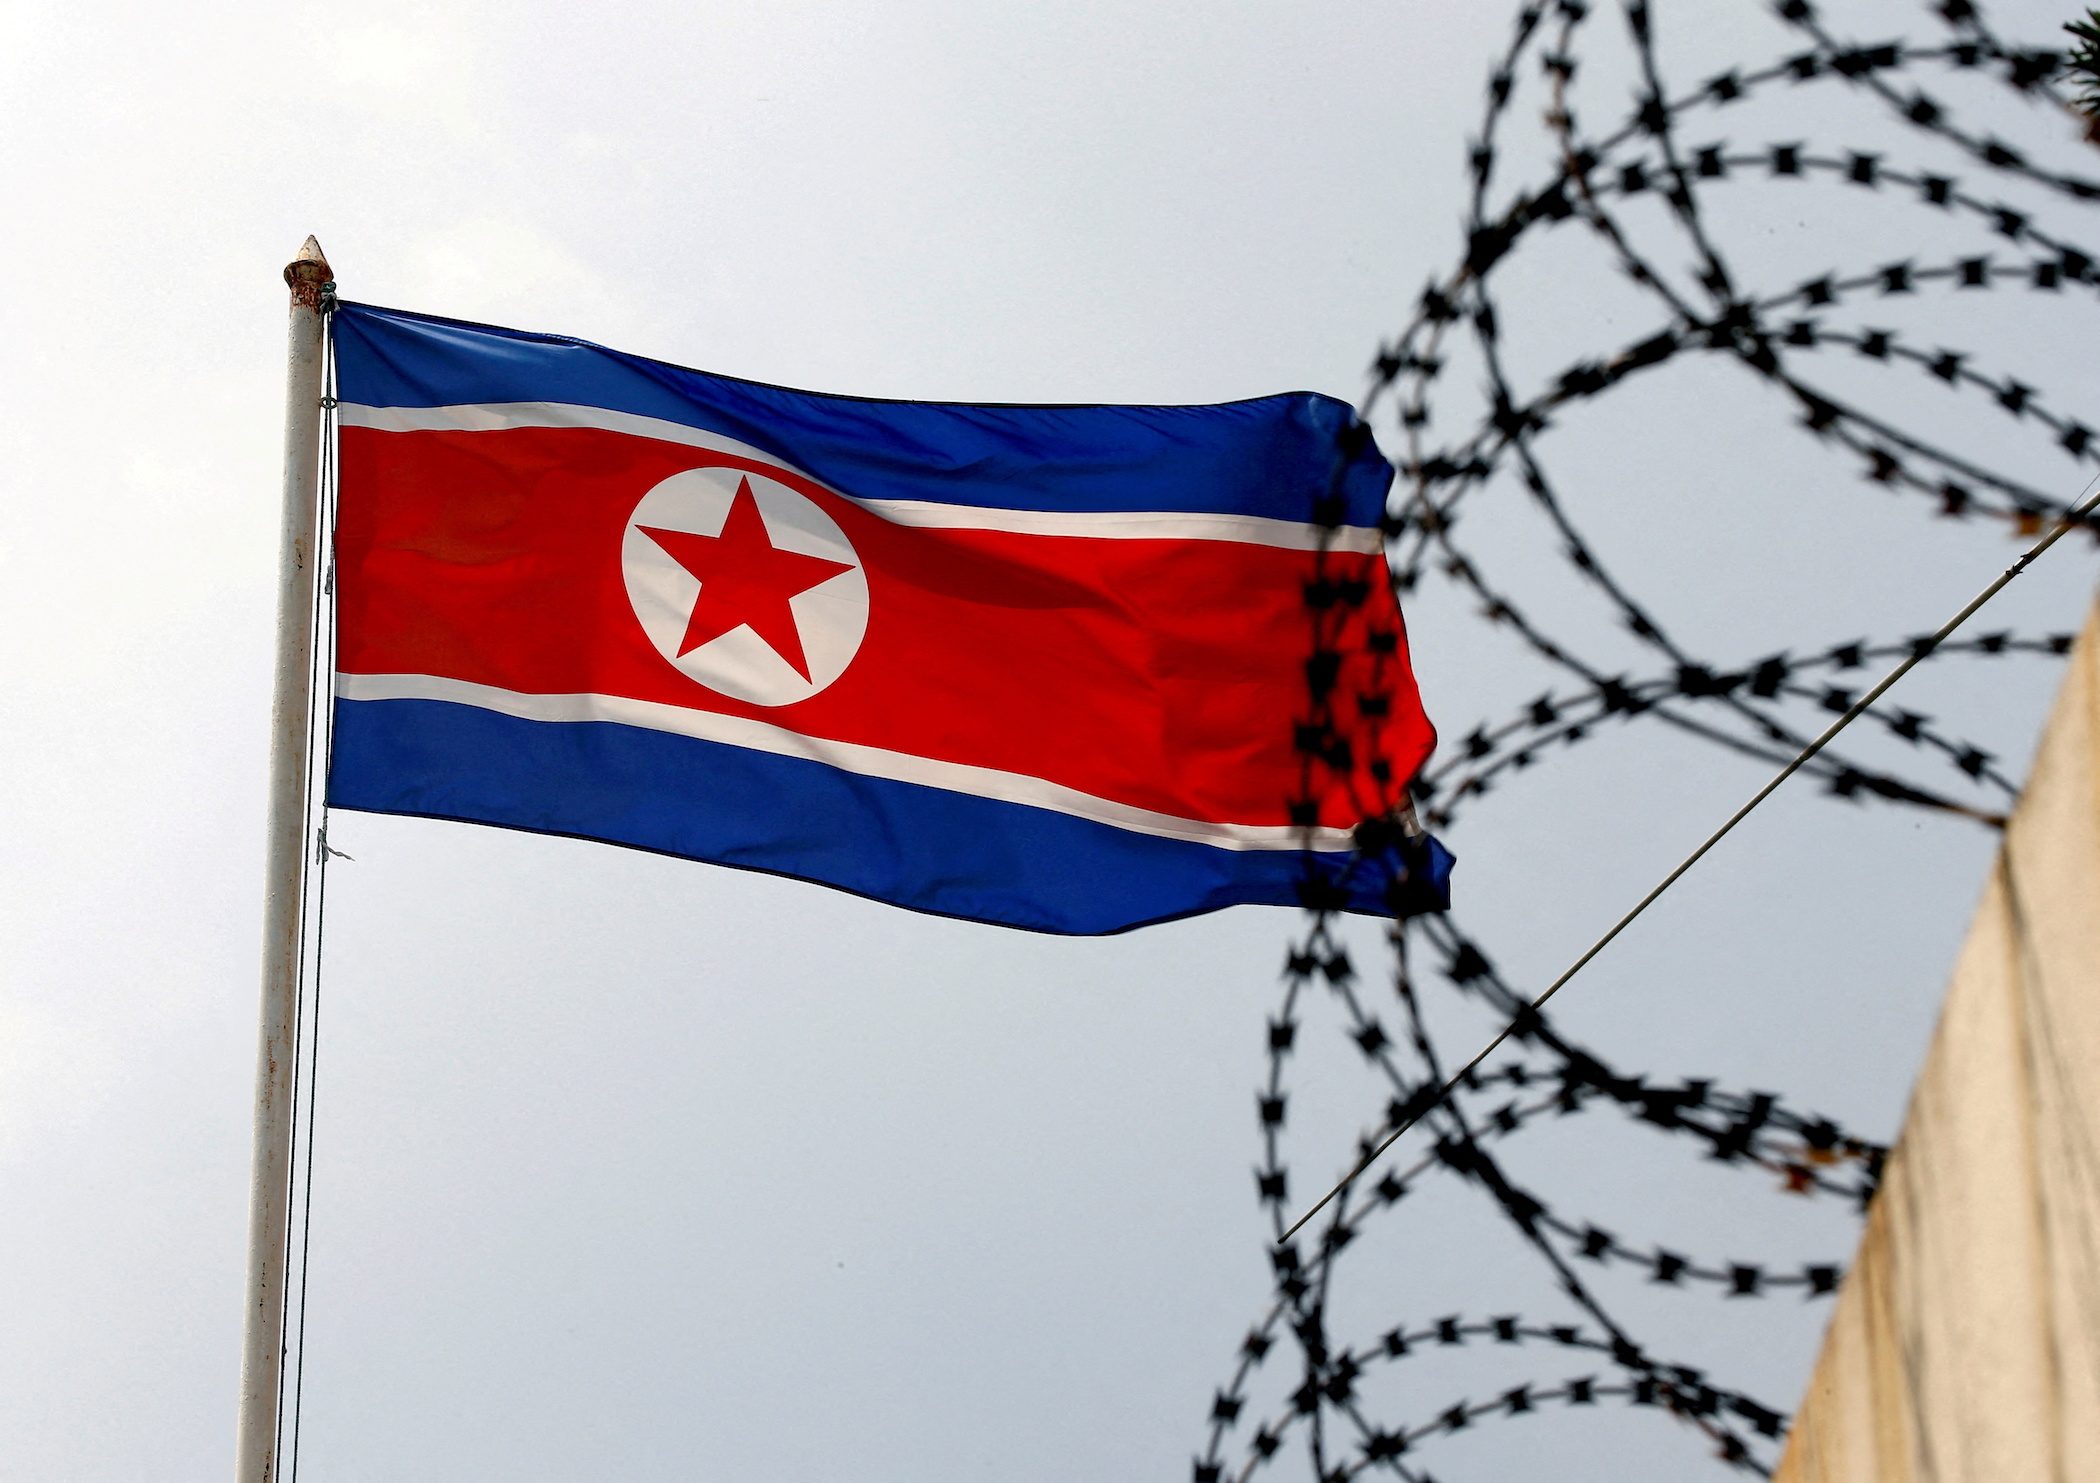 US detains Li Ning’s products at ports, citing use of North Korean labor